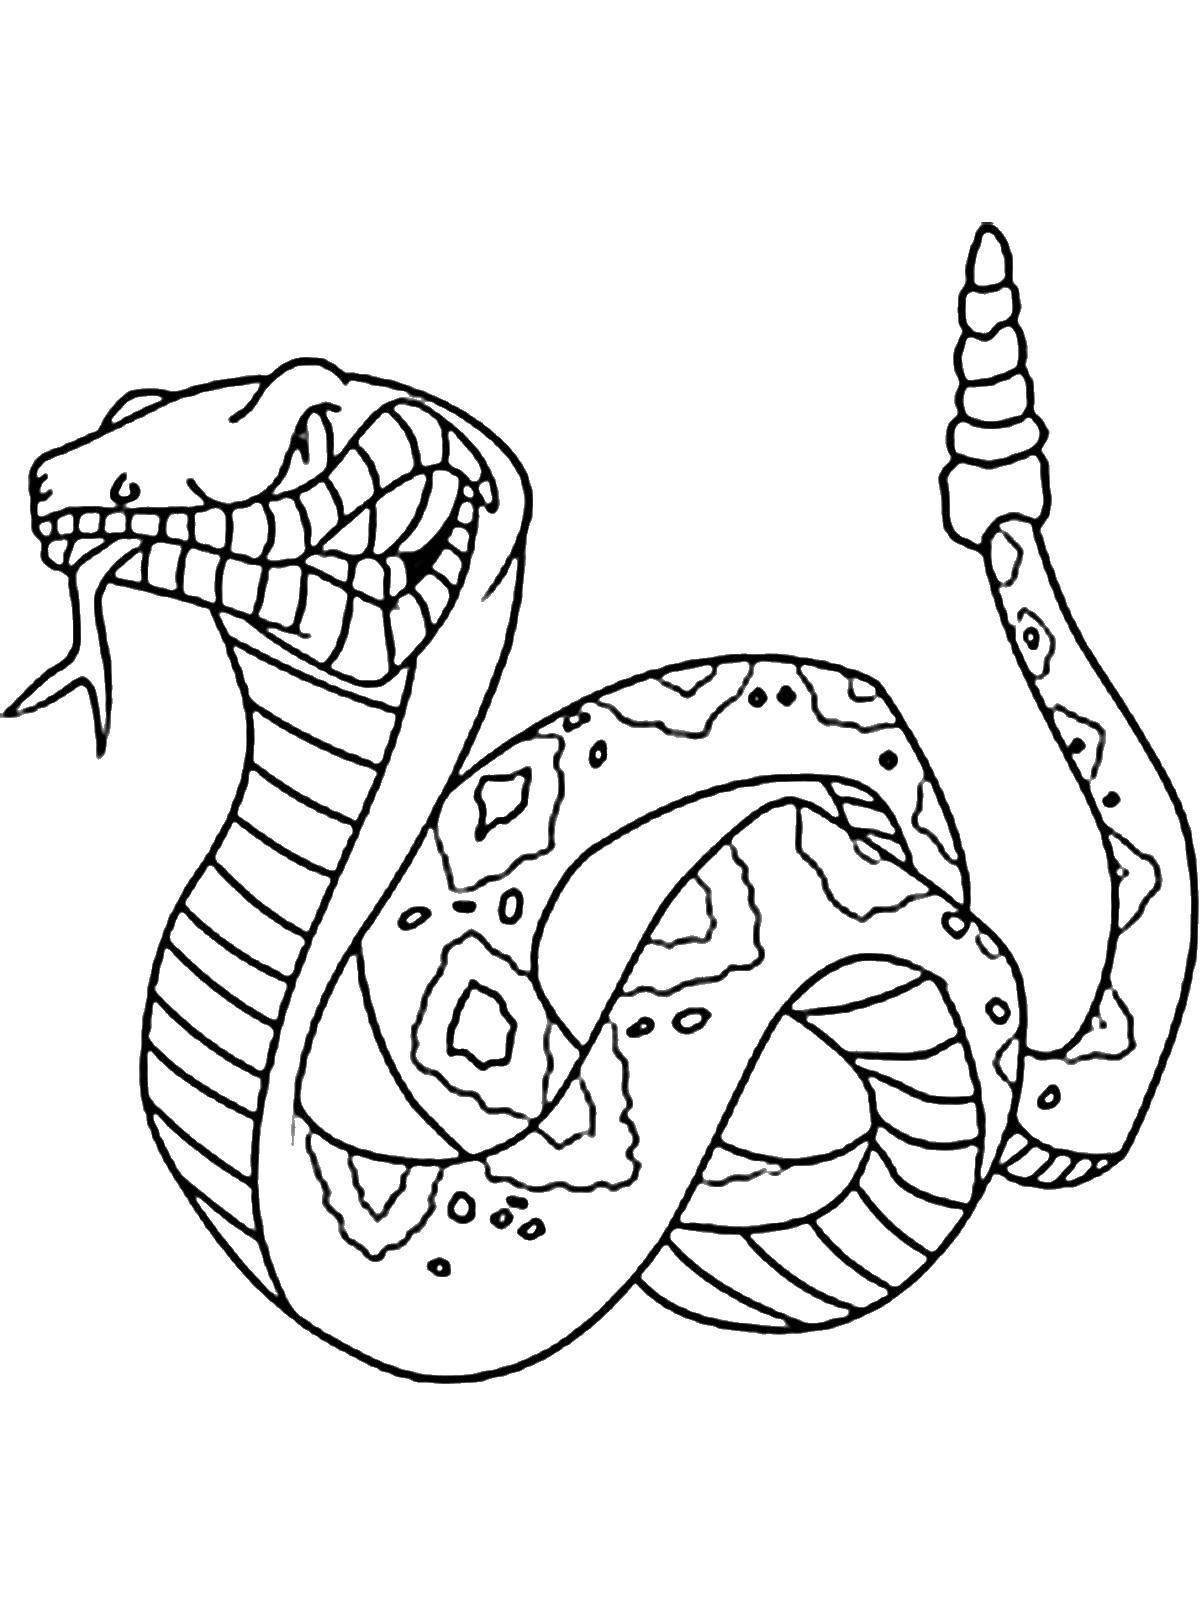 Great coloring cobra